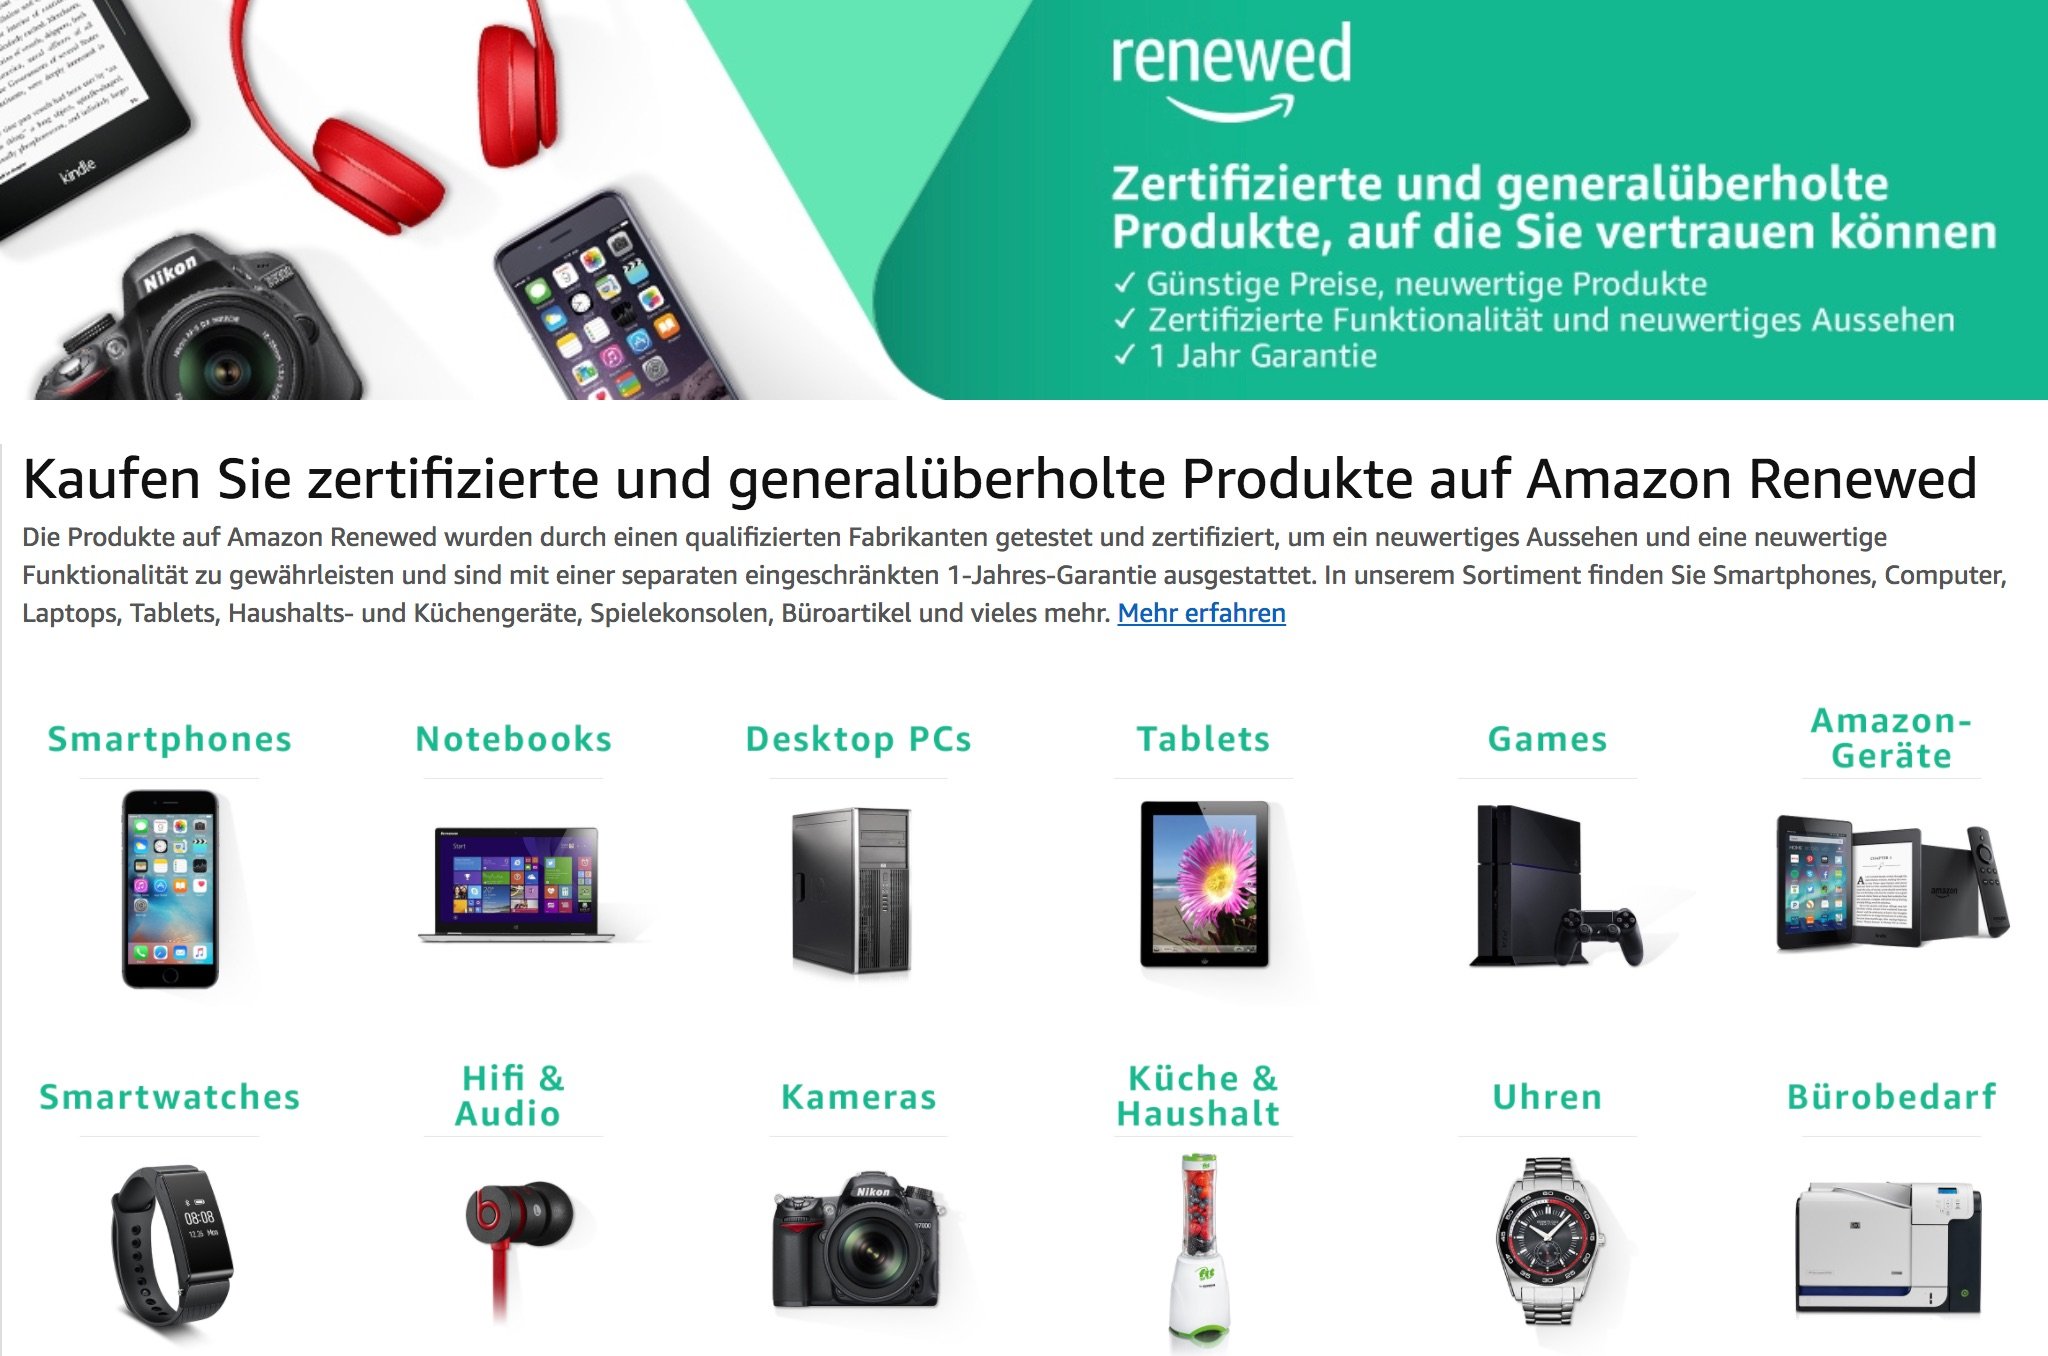 Renewed: Generalüberholte iPhones, iPads, Apple Watches, iMacs & Macbooks 1